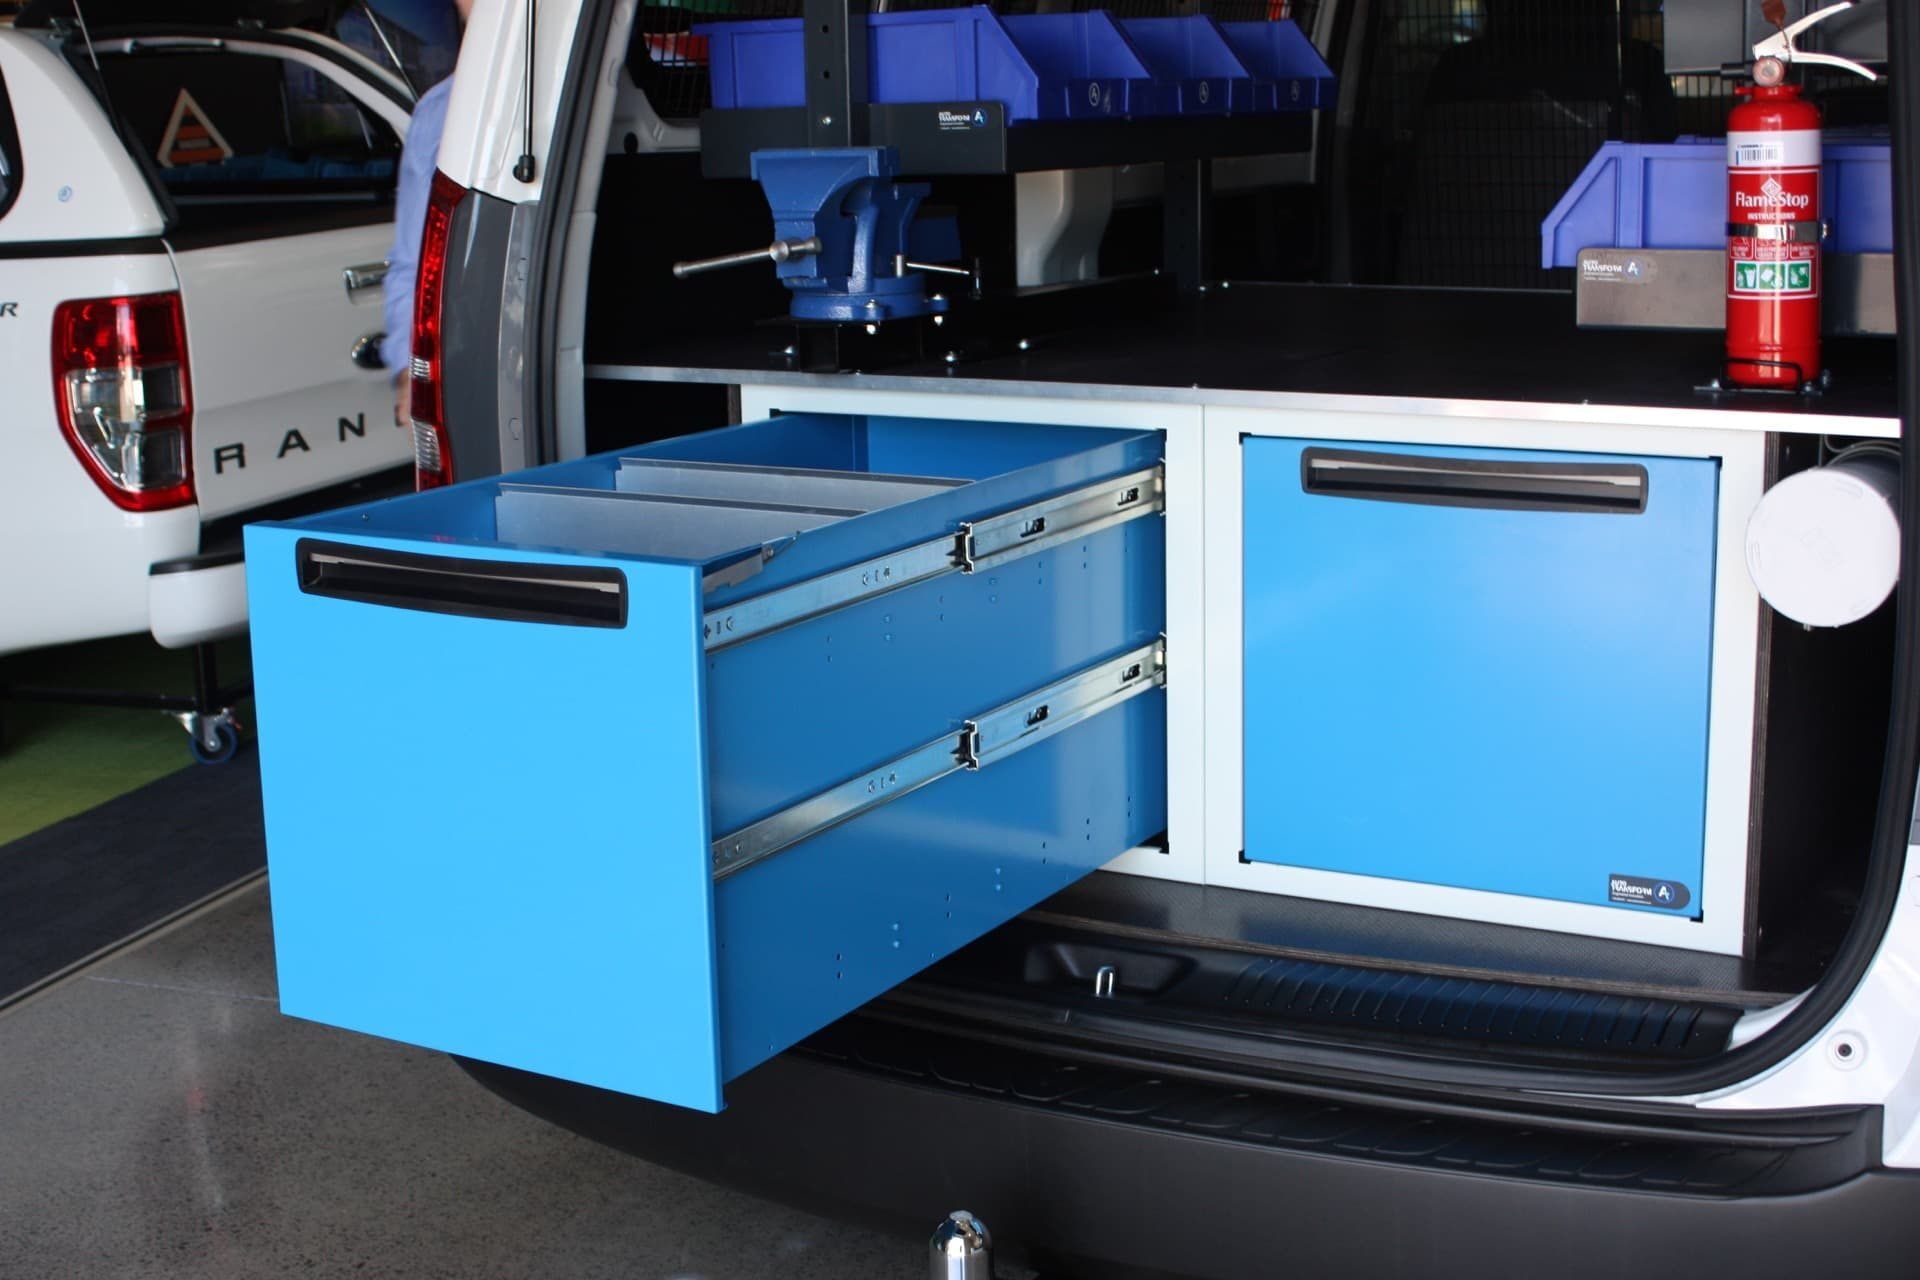 Bin drawer storage system in vehicle